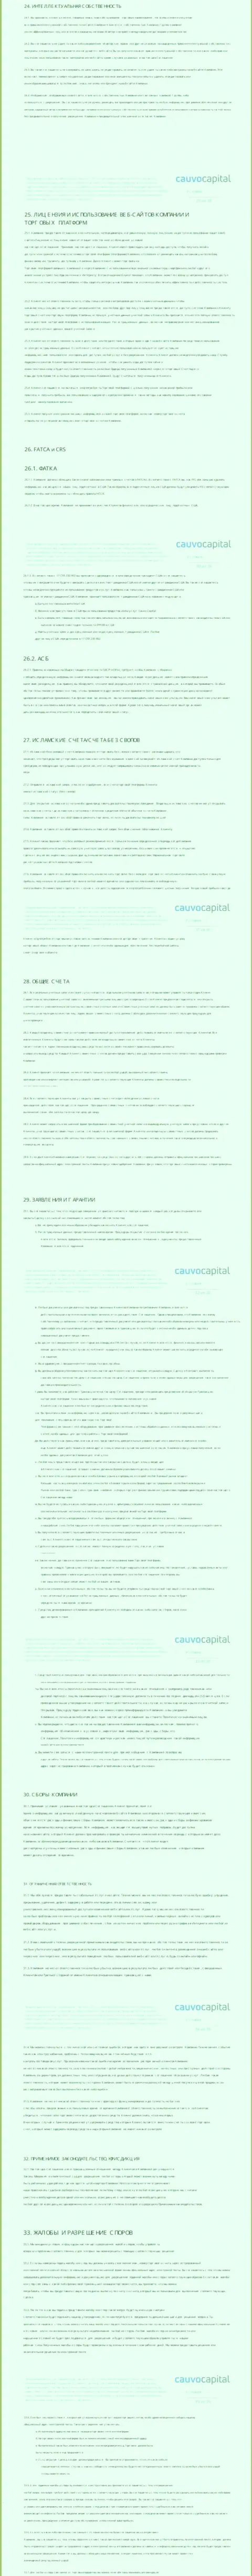 Часть 4 соглашения организации CauvoCapital